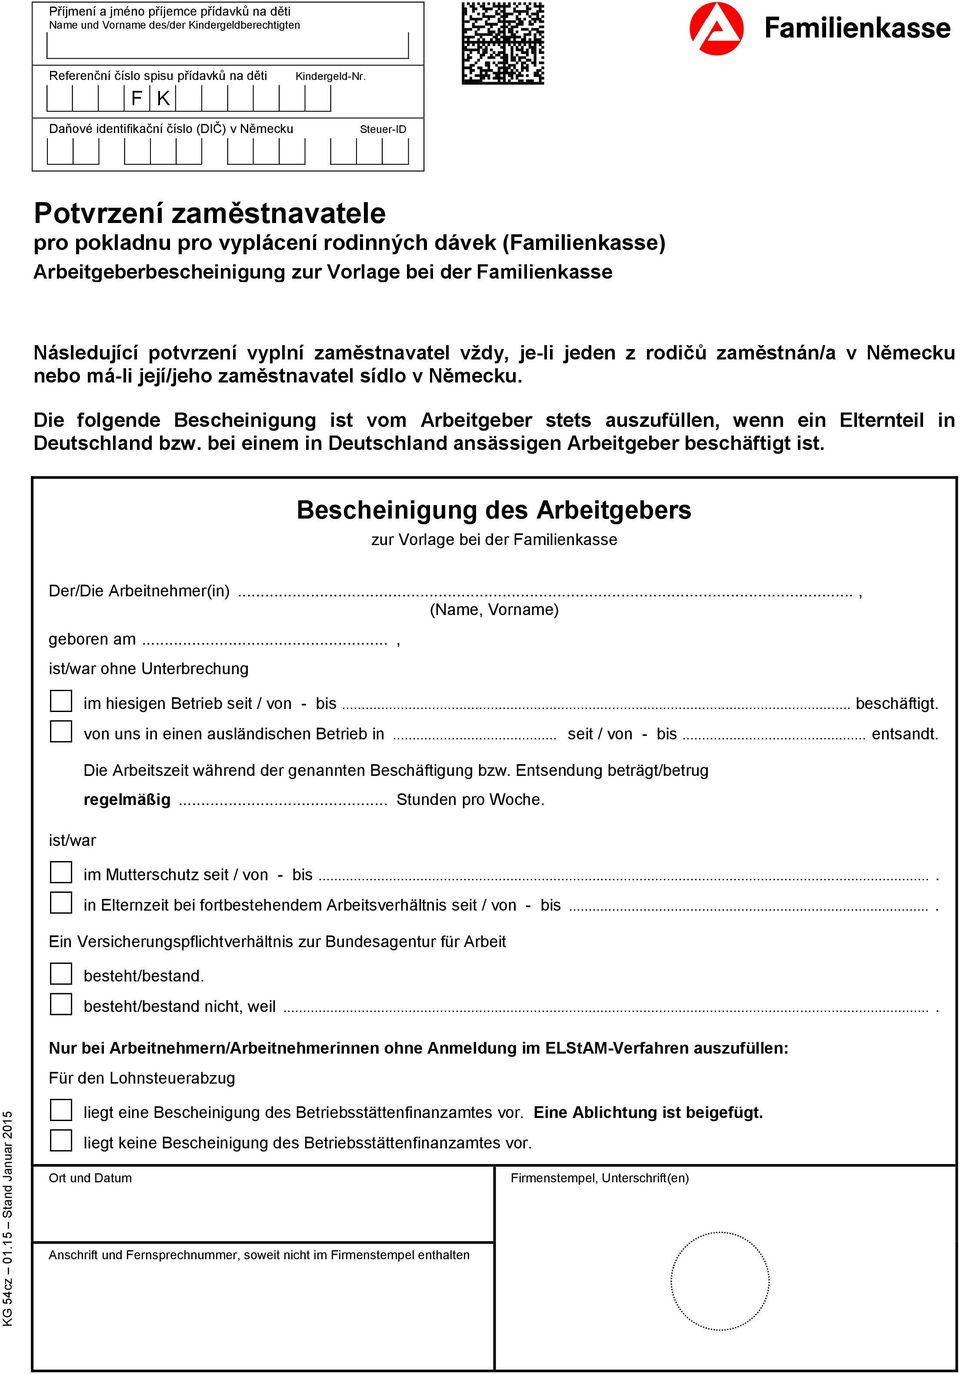 Následující potvrzení vyplní zaměstnavatel vždy, je-li jeden z rodičů zaměstnán/a v Německu nebo má-li její/jeho zaměstnavatel sídlo v Německu.